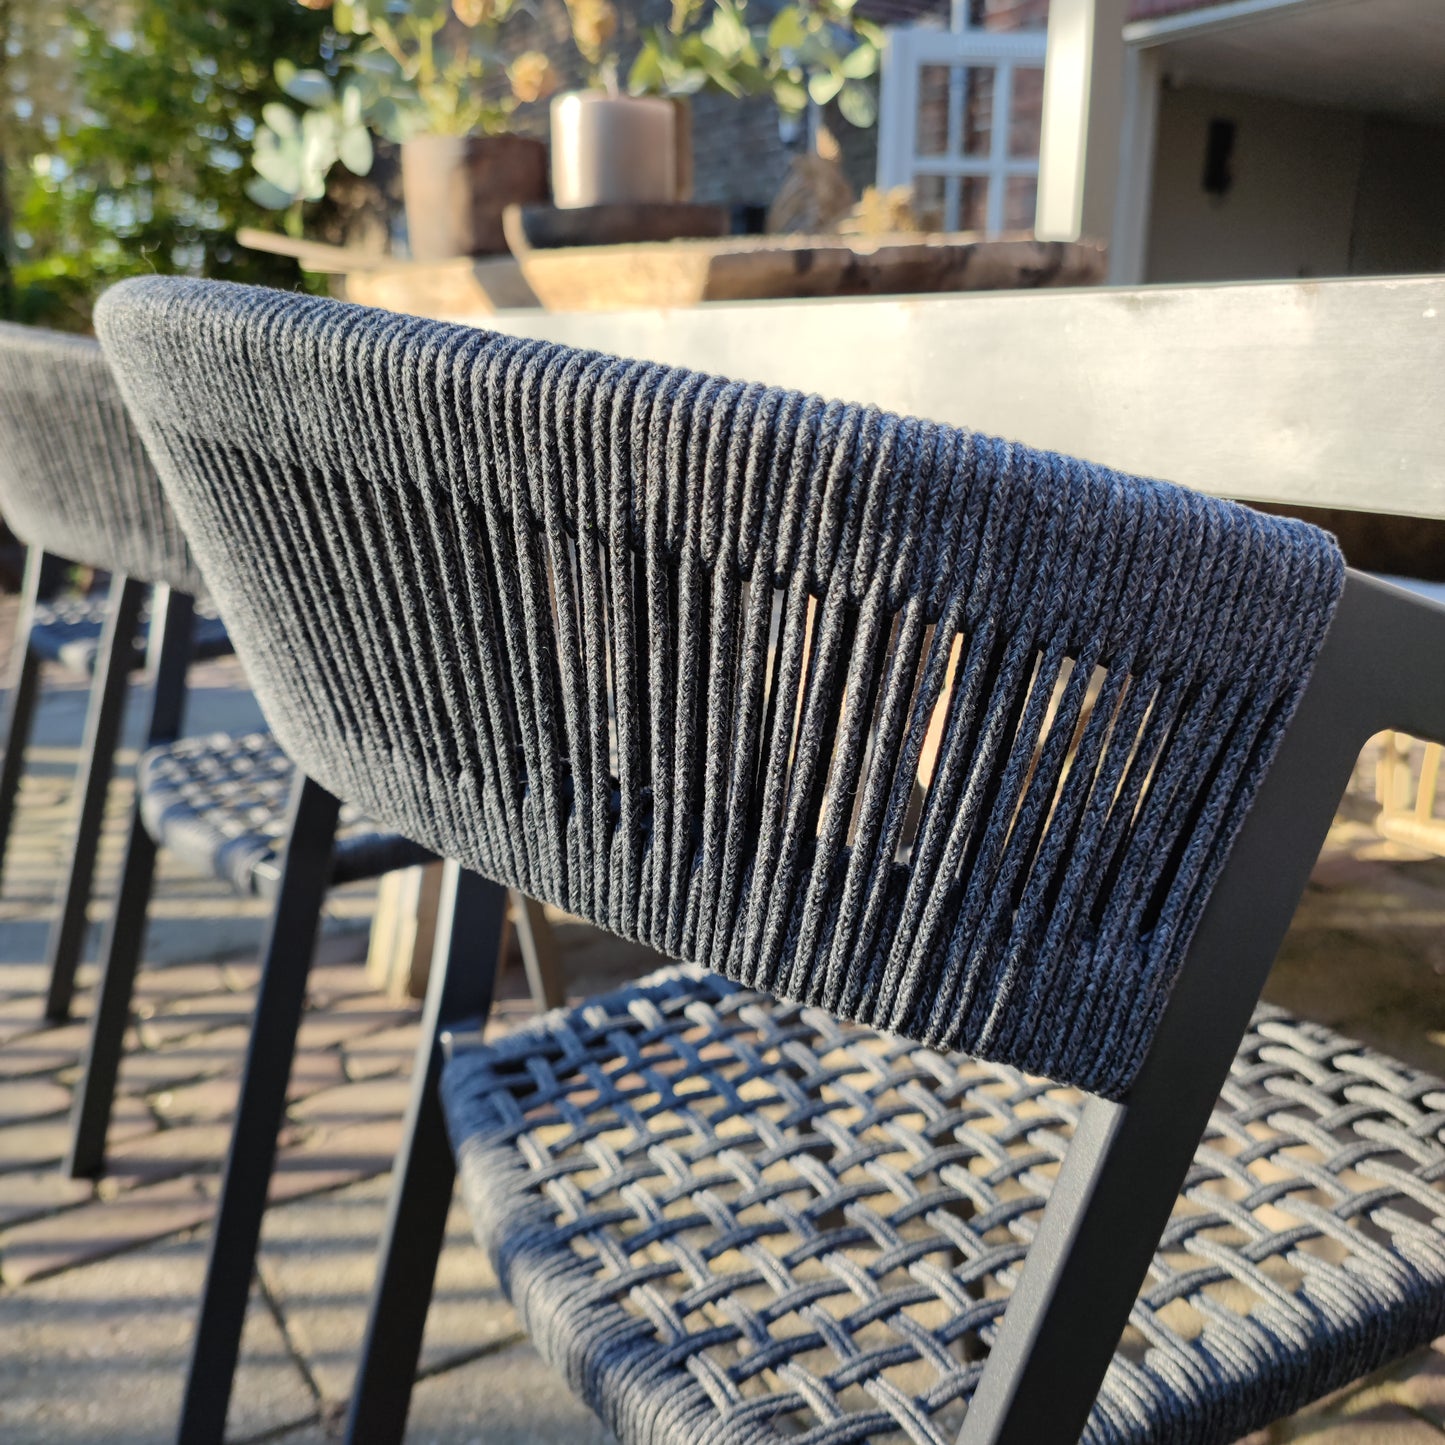 Outdoor-Stuhl Aluminiumseil